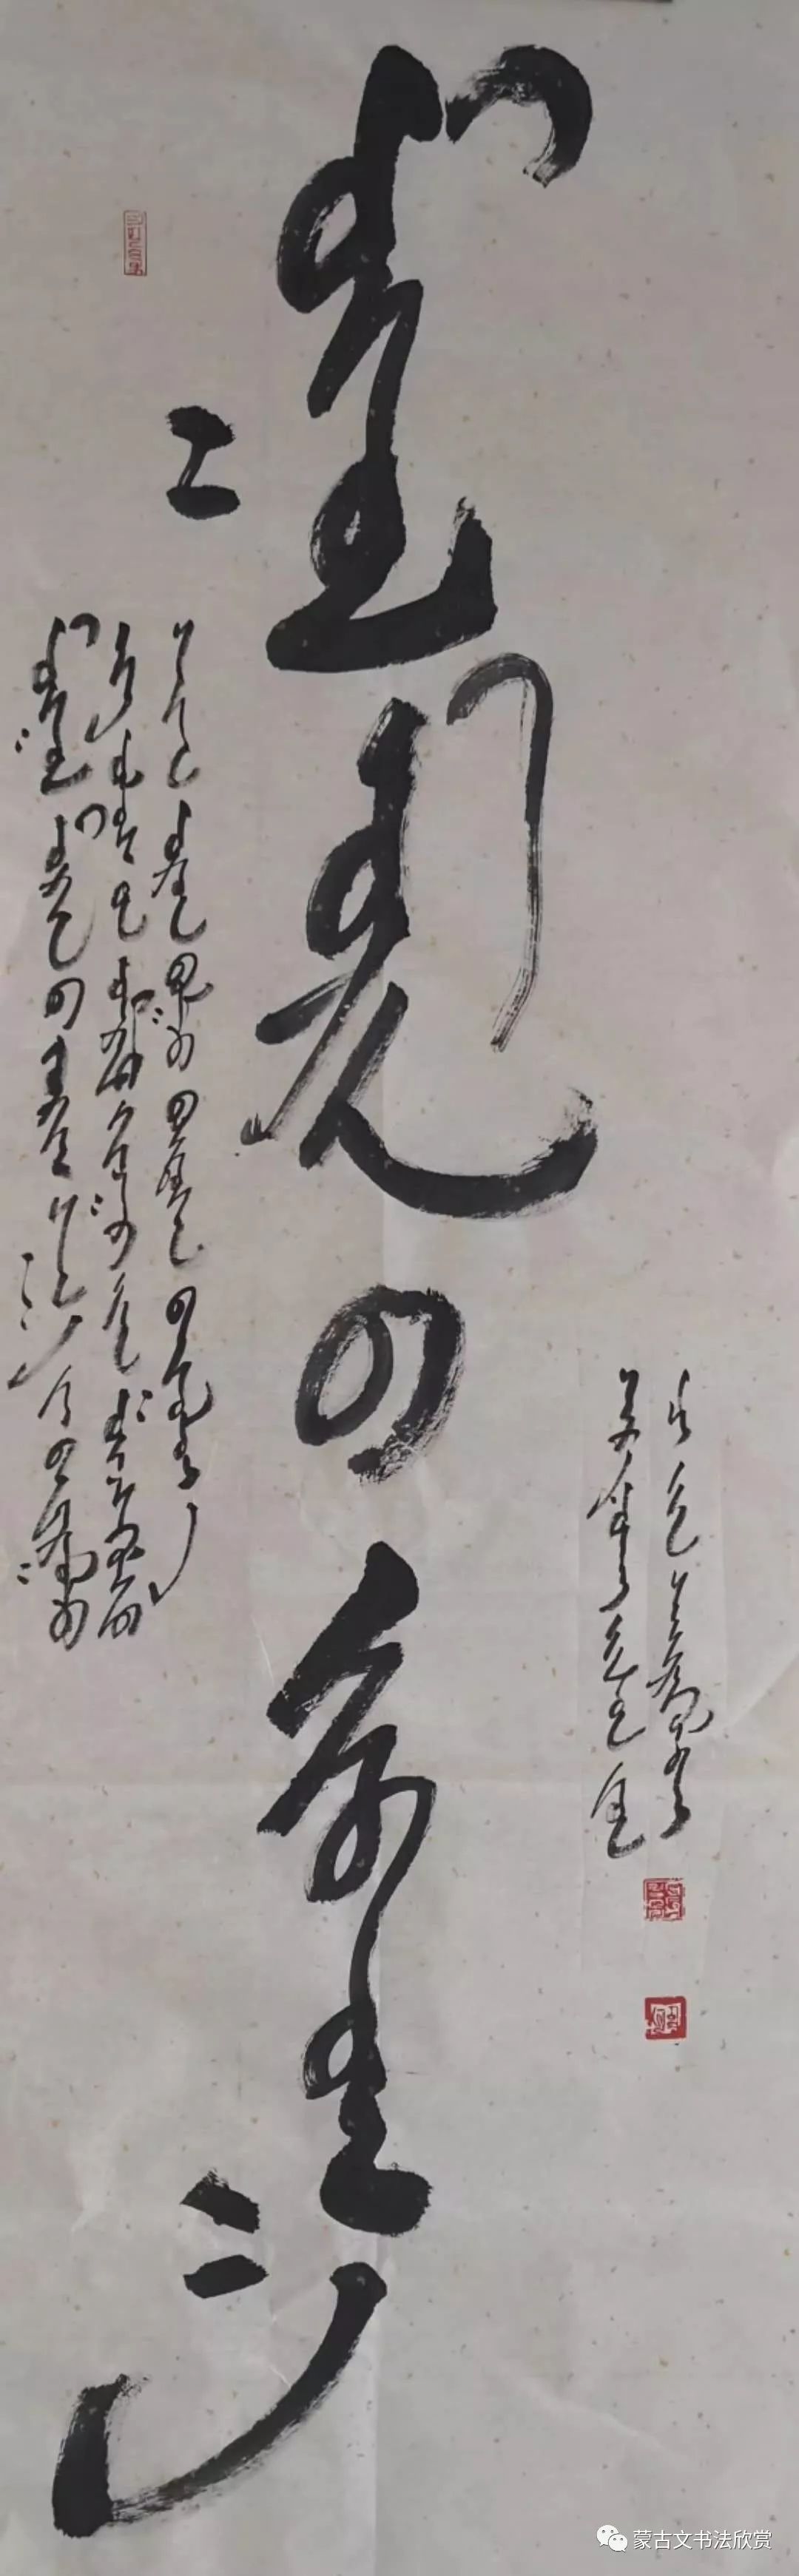 蒙古文书法欣赏——七斤 第11张